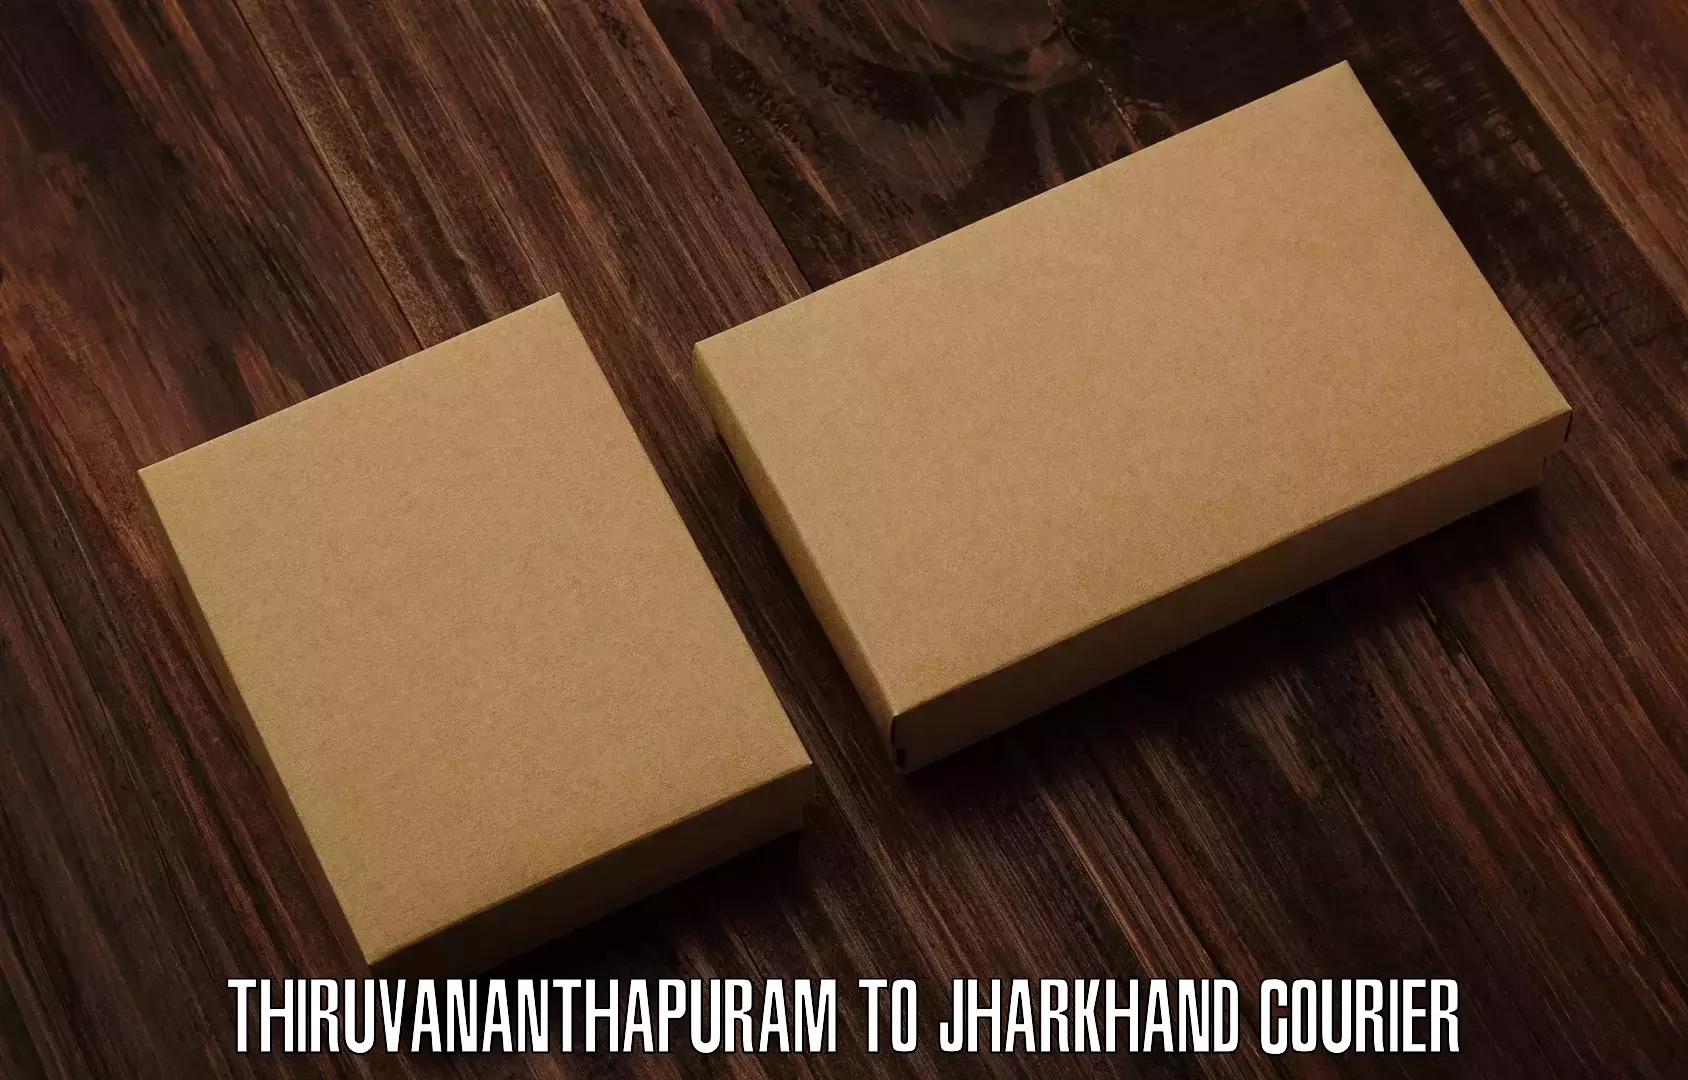 Parcel handling and care Thiruvananthapuram to Chandwa